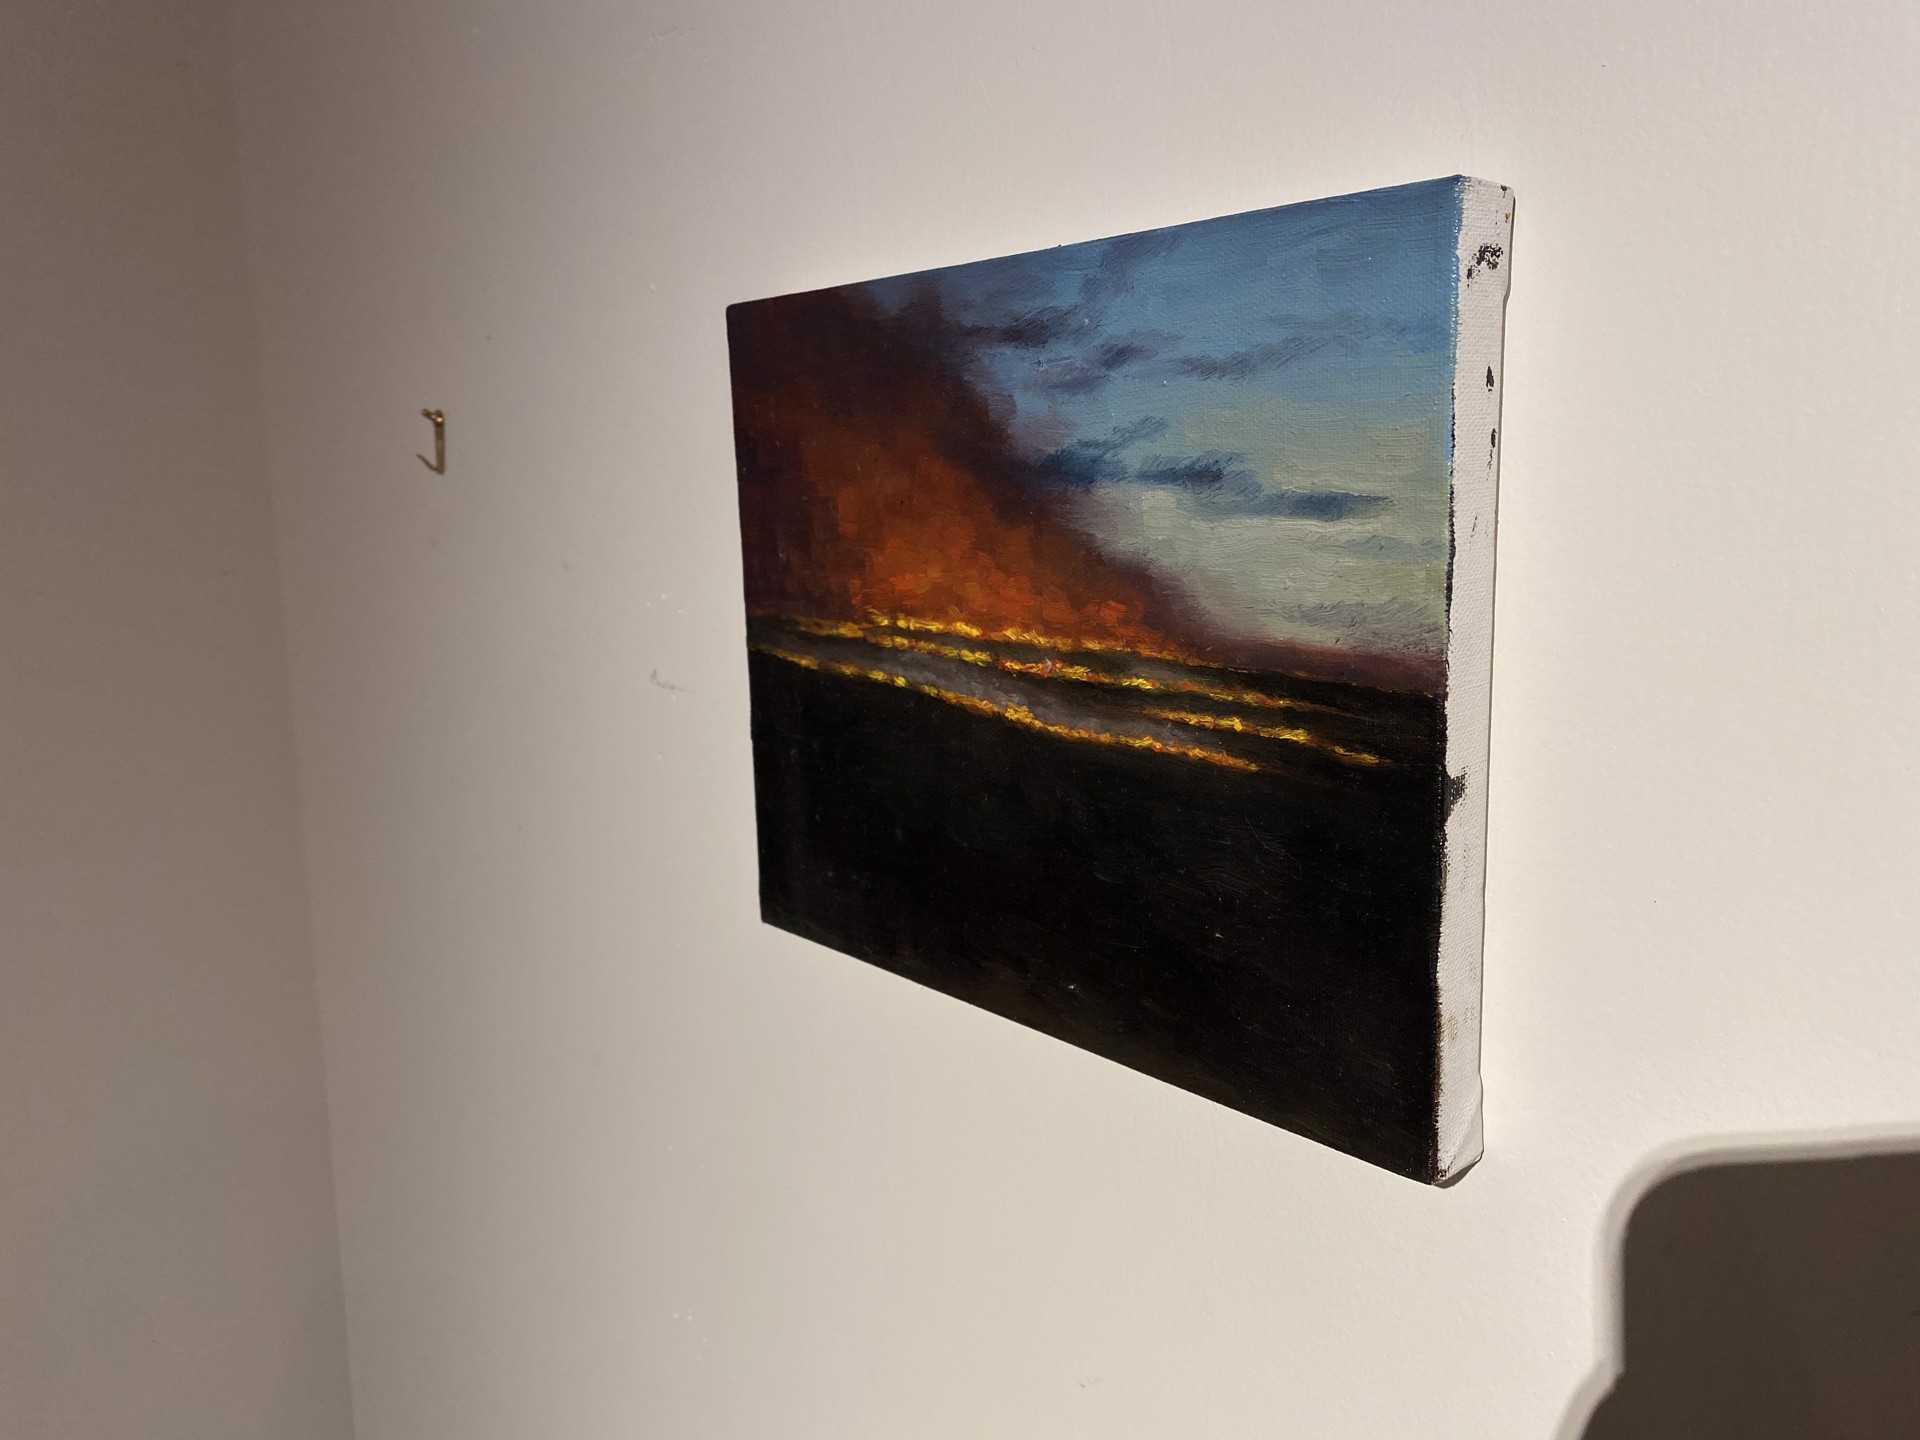 Burning at Dusk by Daliah Ammar